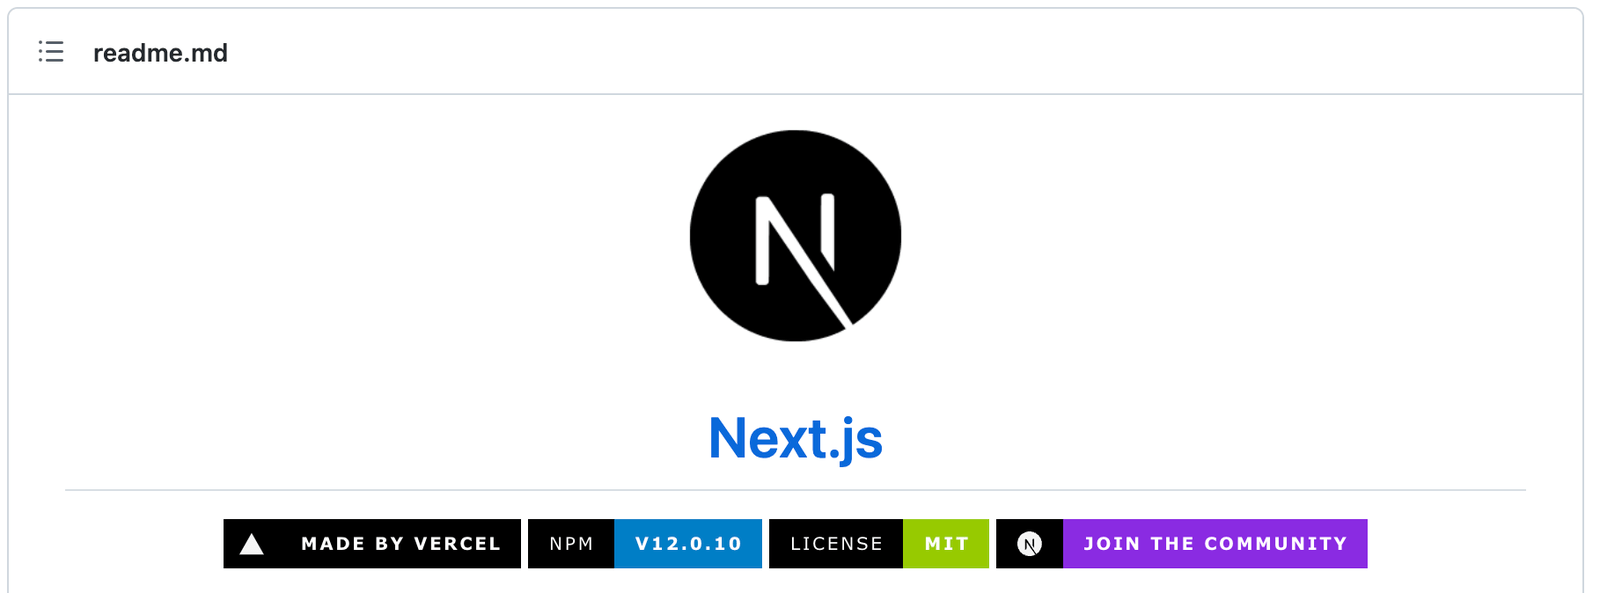 Se muestra el título del repositorio de Next.js con insignias de GitHub.